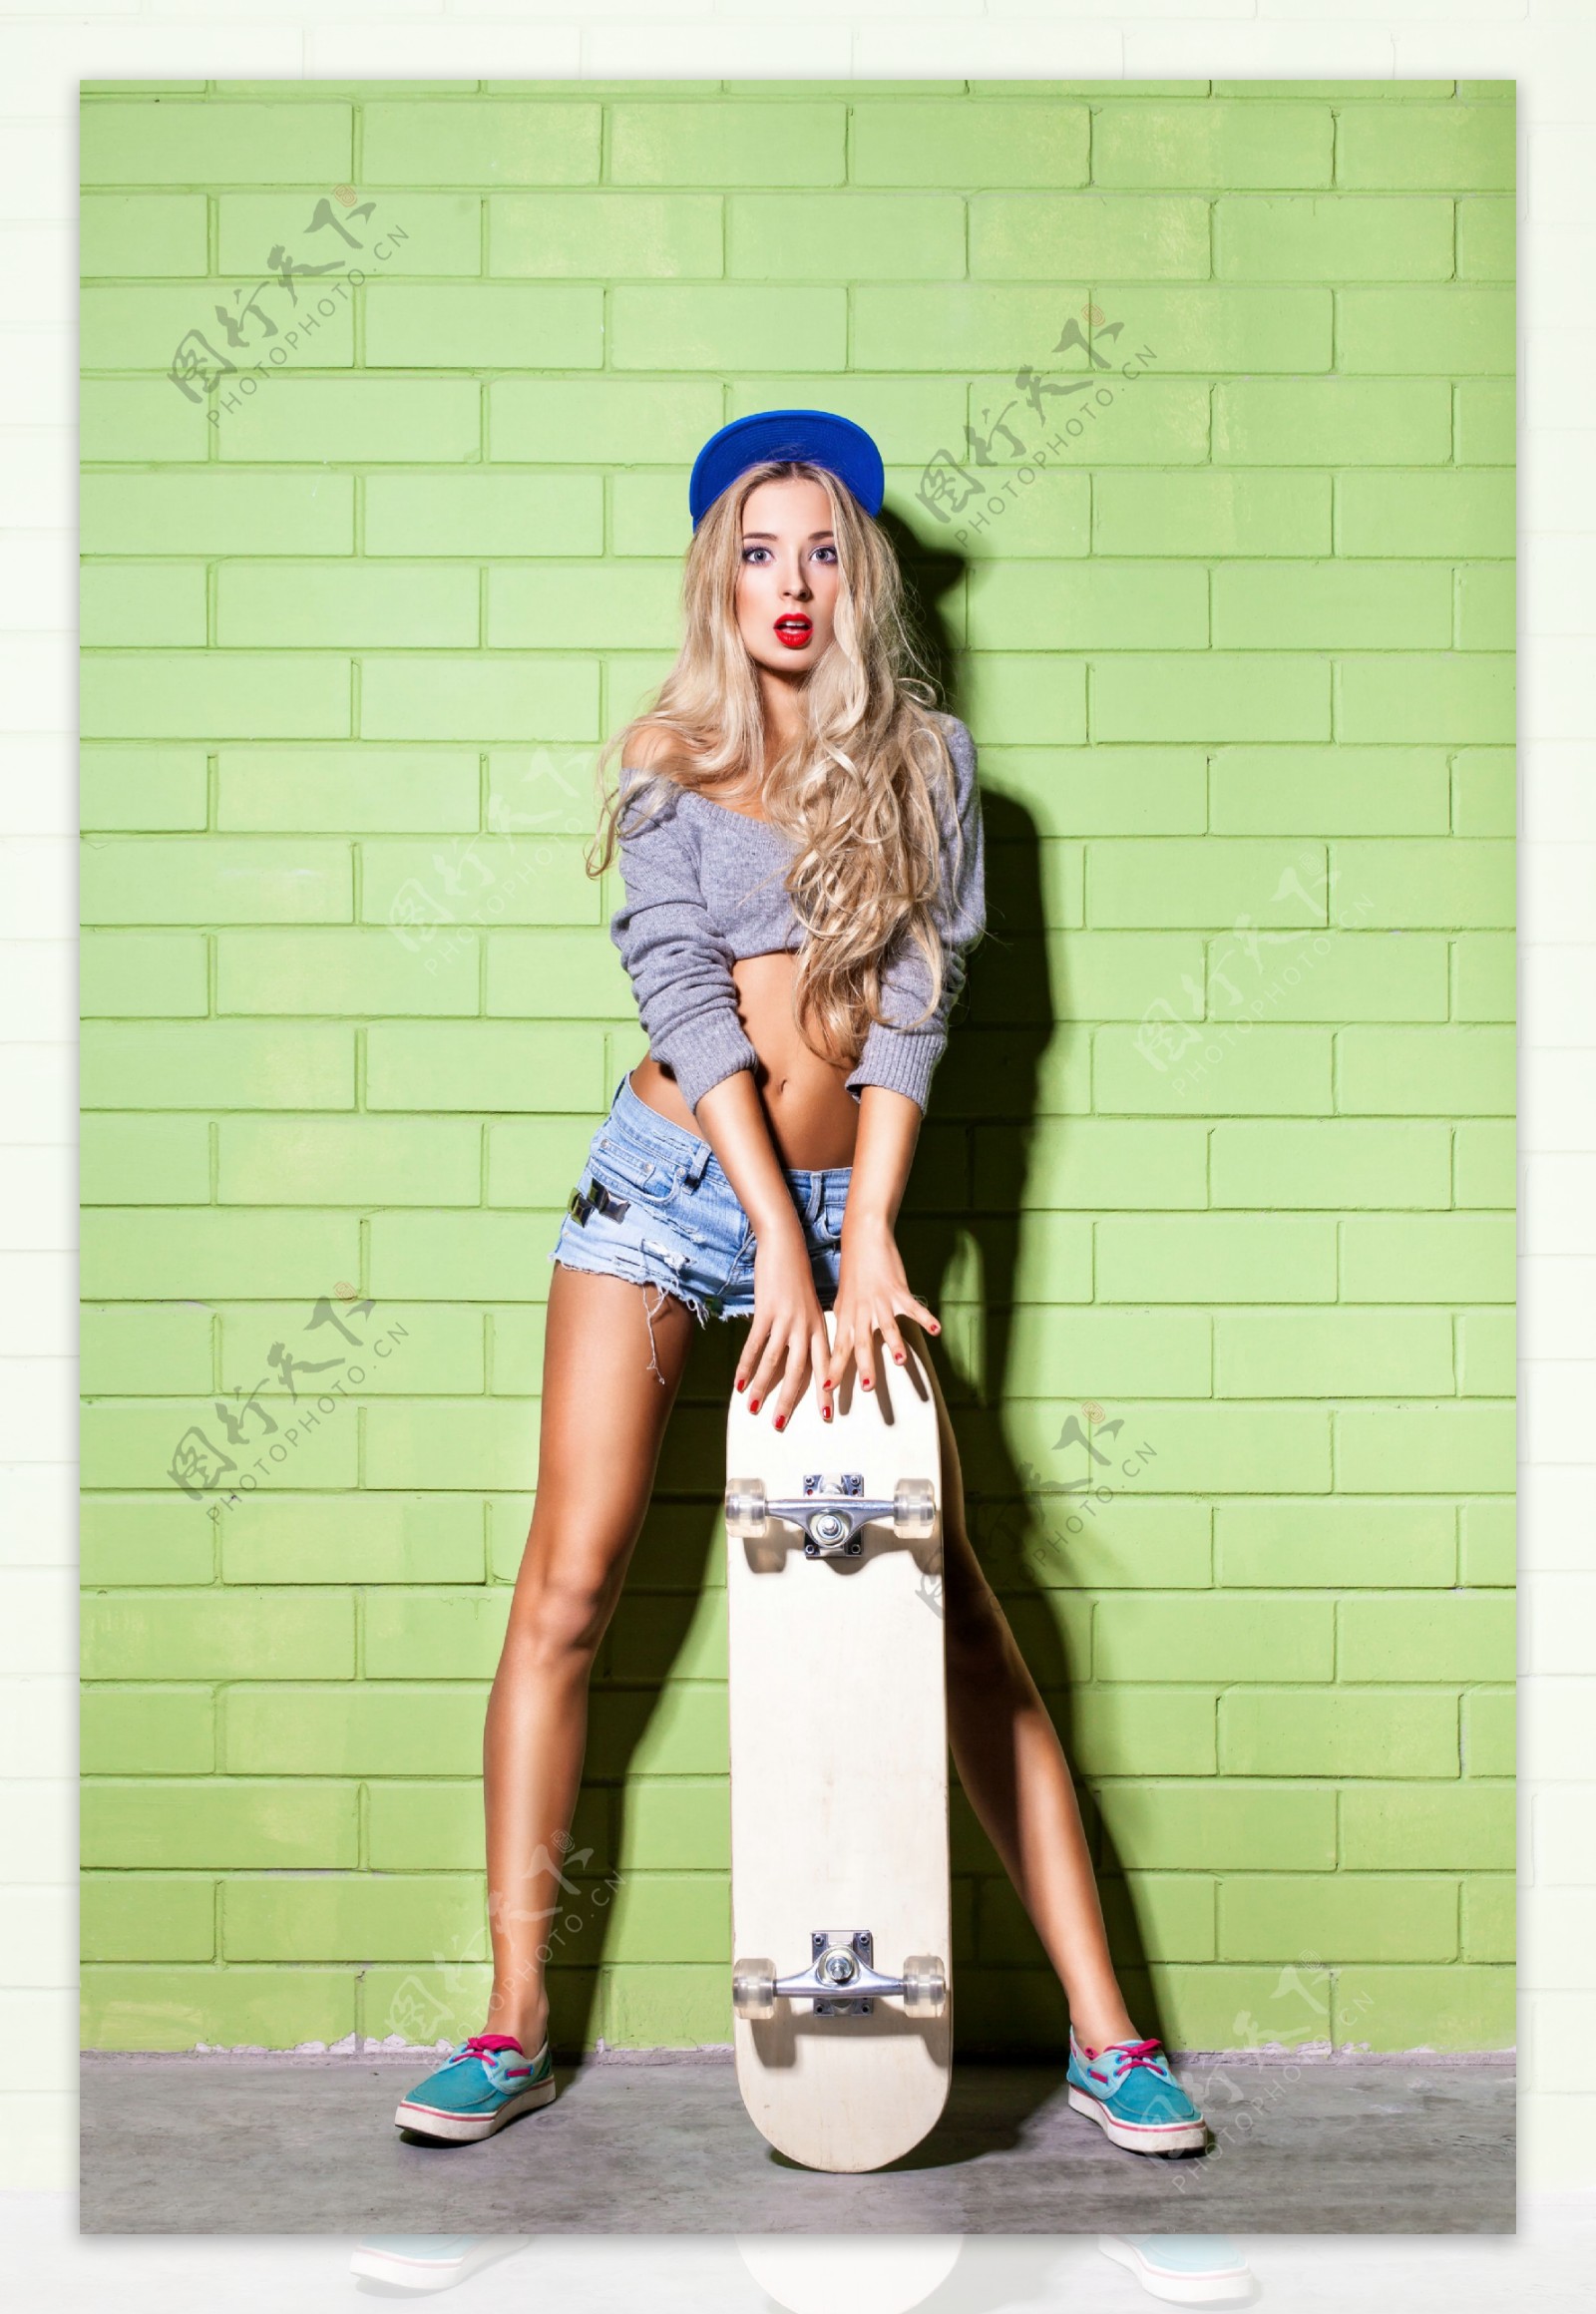 立着滑板的美女图片